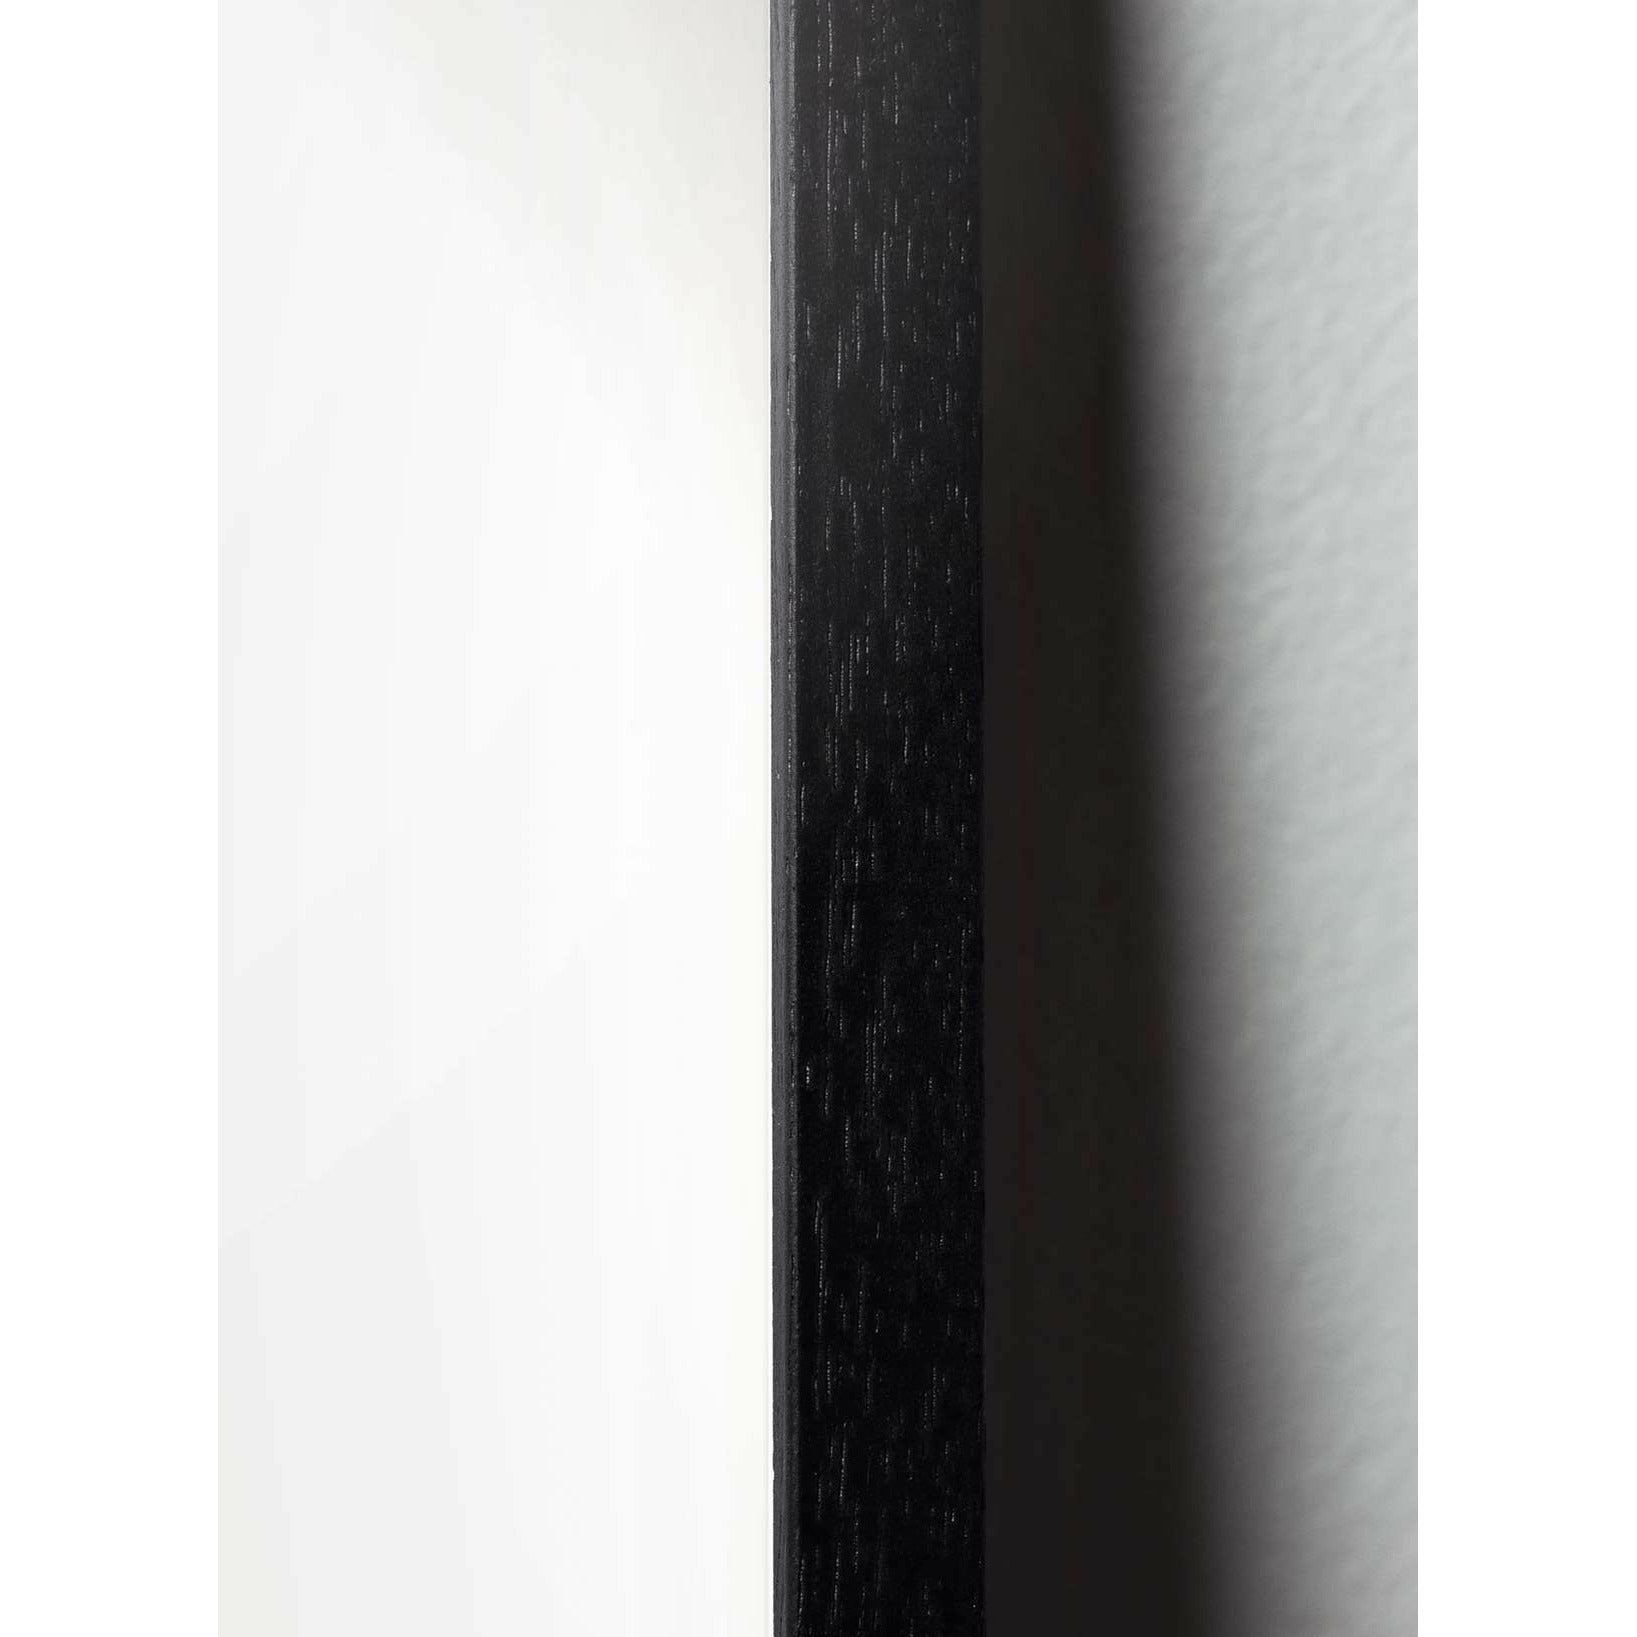 Pomysły plakat linii mrówek, rama w czarnym lakierowanym drewnie 30x40 cm, białe tło